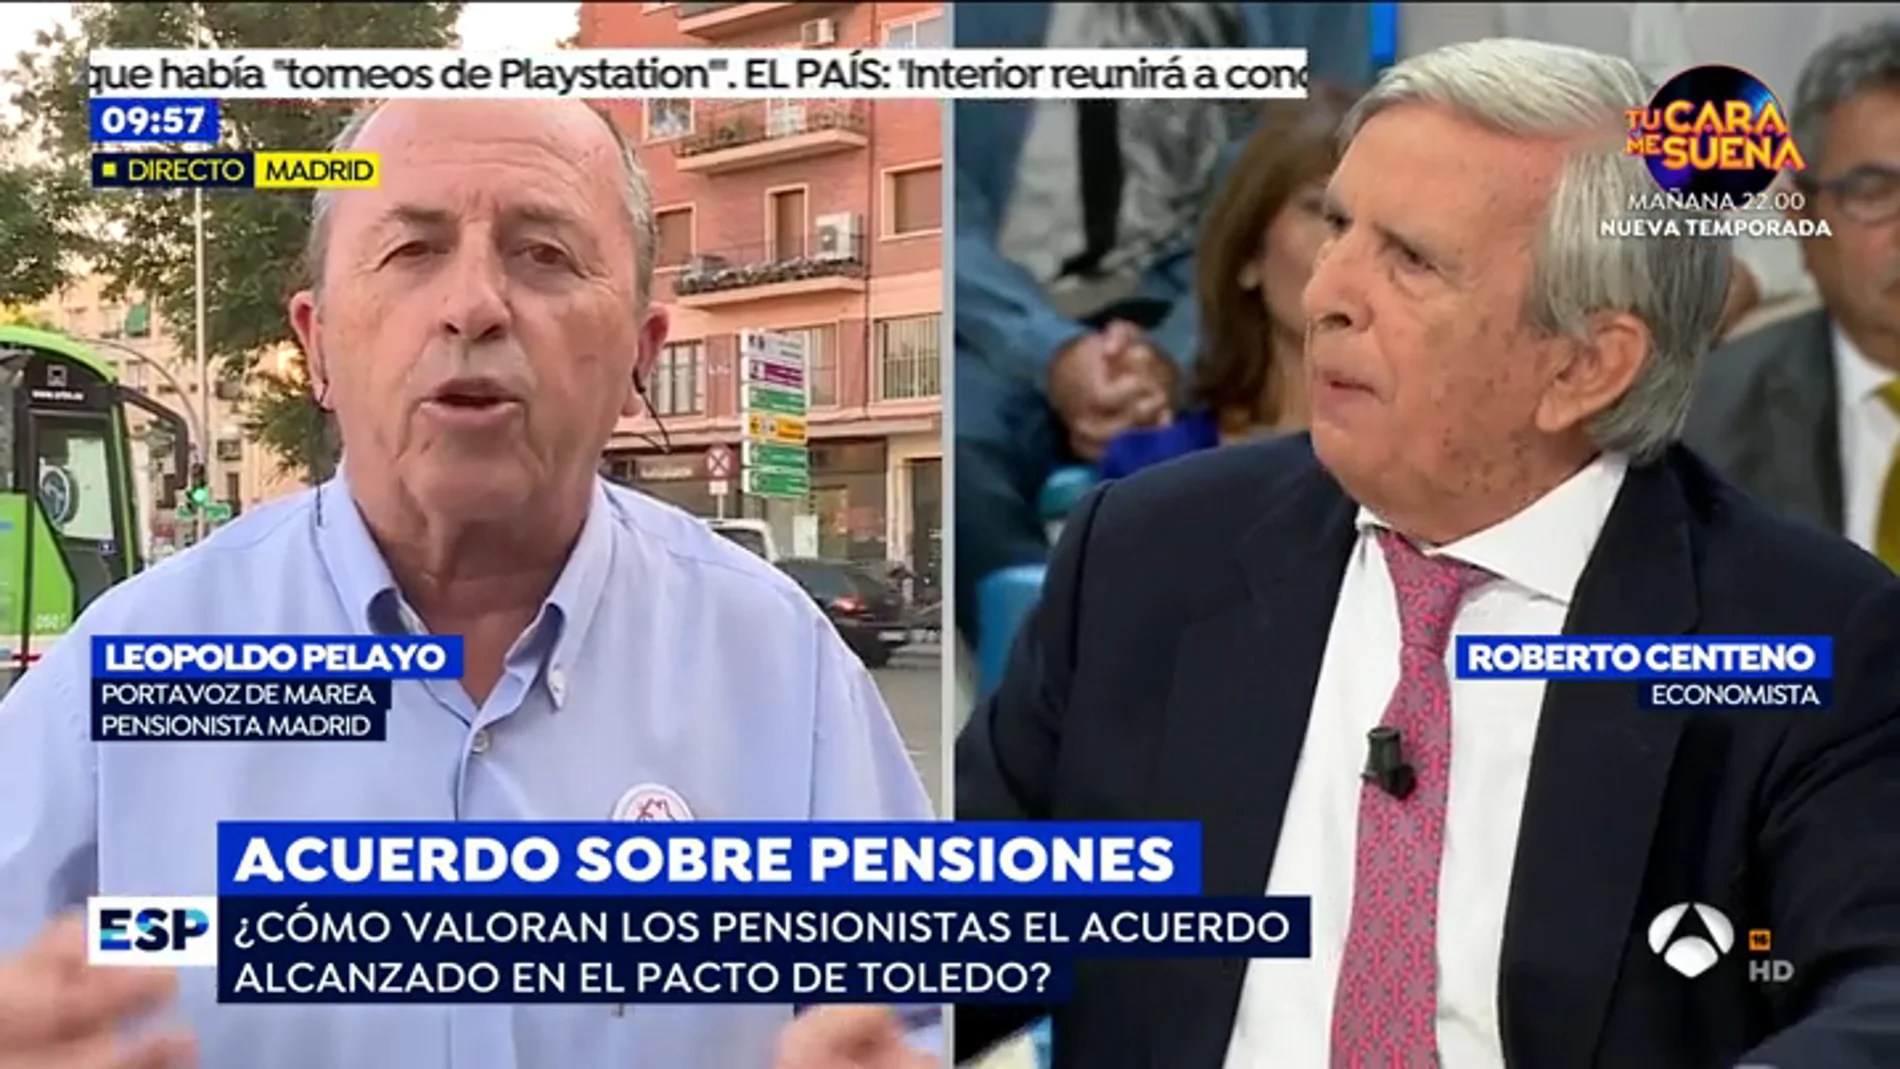 La tremenda bronca del economista Roberto Centeno con un pensionista: "Las cifras las entiende hasta un niño de Primaria"